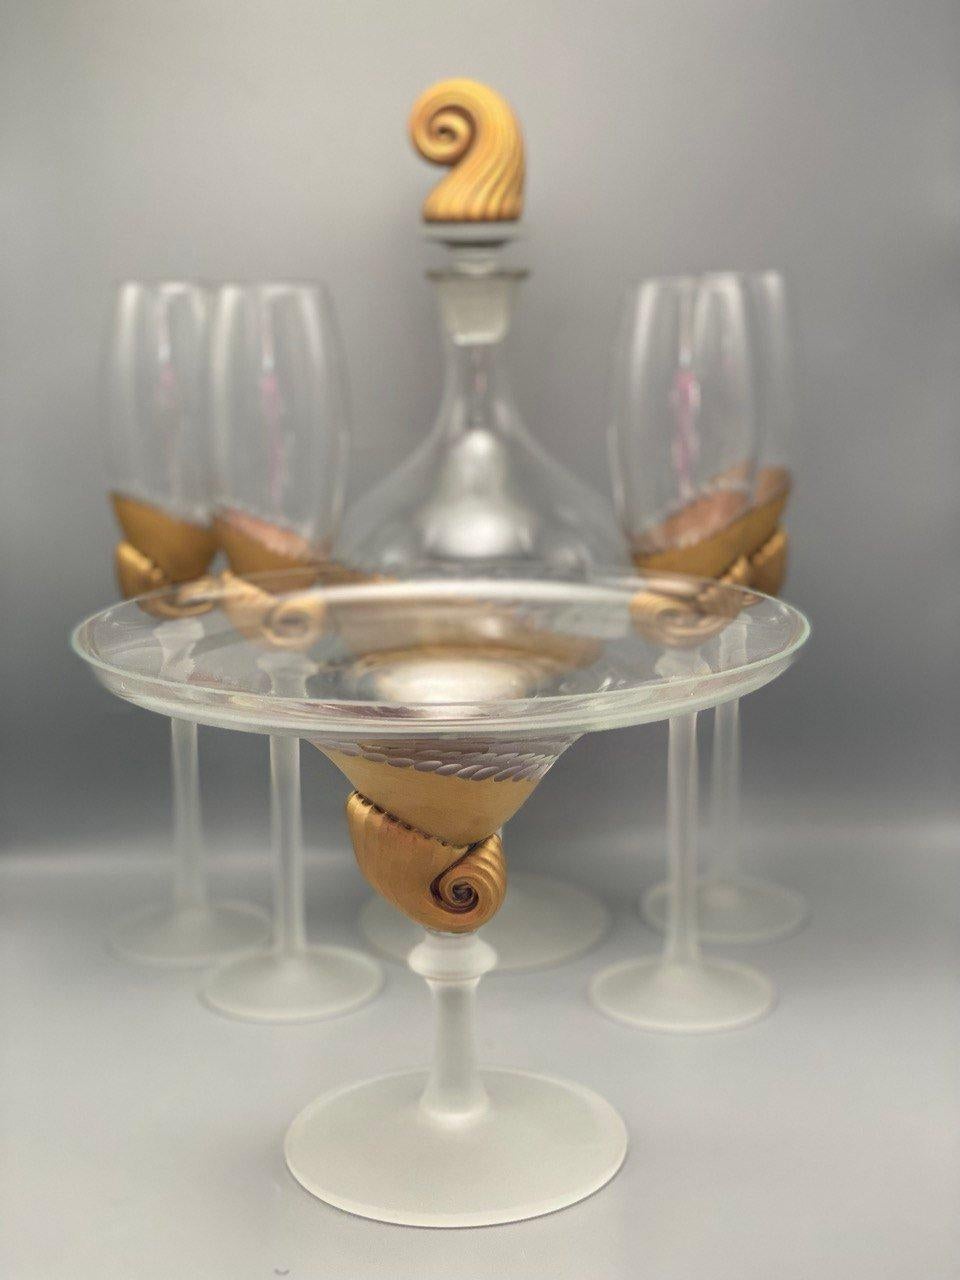 Ein absolut antikes Kristall-Tischgeschirr-Set.

Dieses charmante 6er-Set besteht aus einem Dekanter, 4 passenden Kelchen und einer Kerzenschale.

Kristallglasgläser sind die originellste und interessanteste Art von Behältern für Getränke. Sie